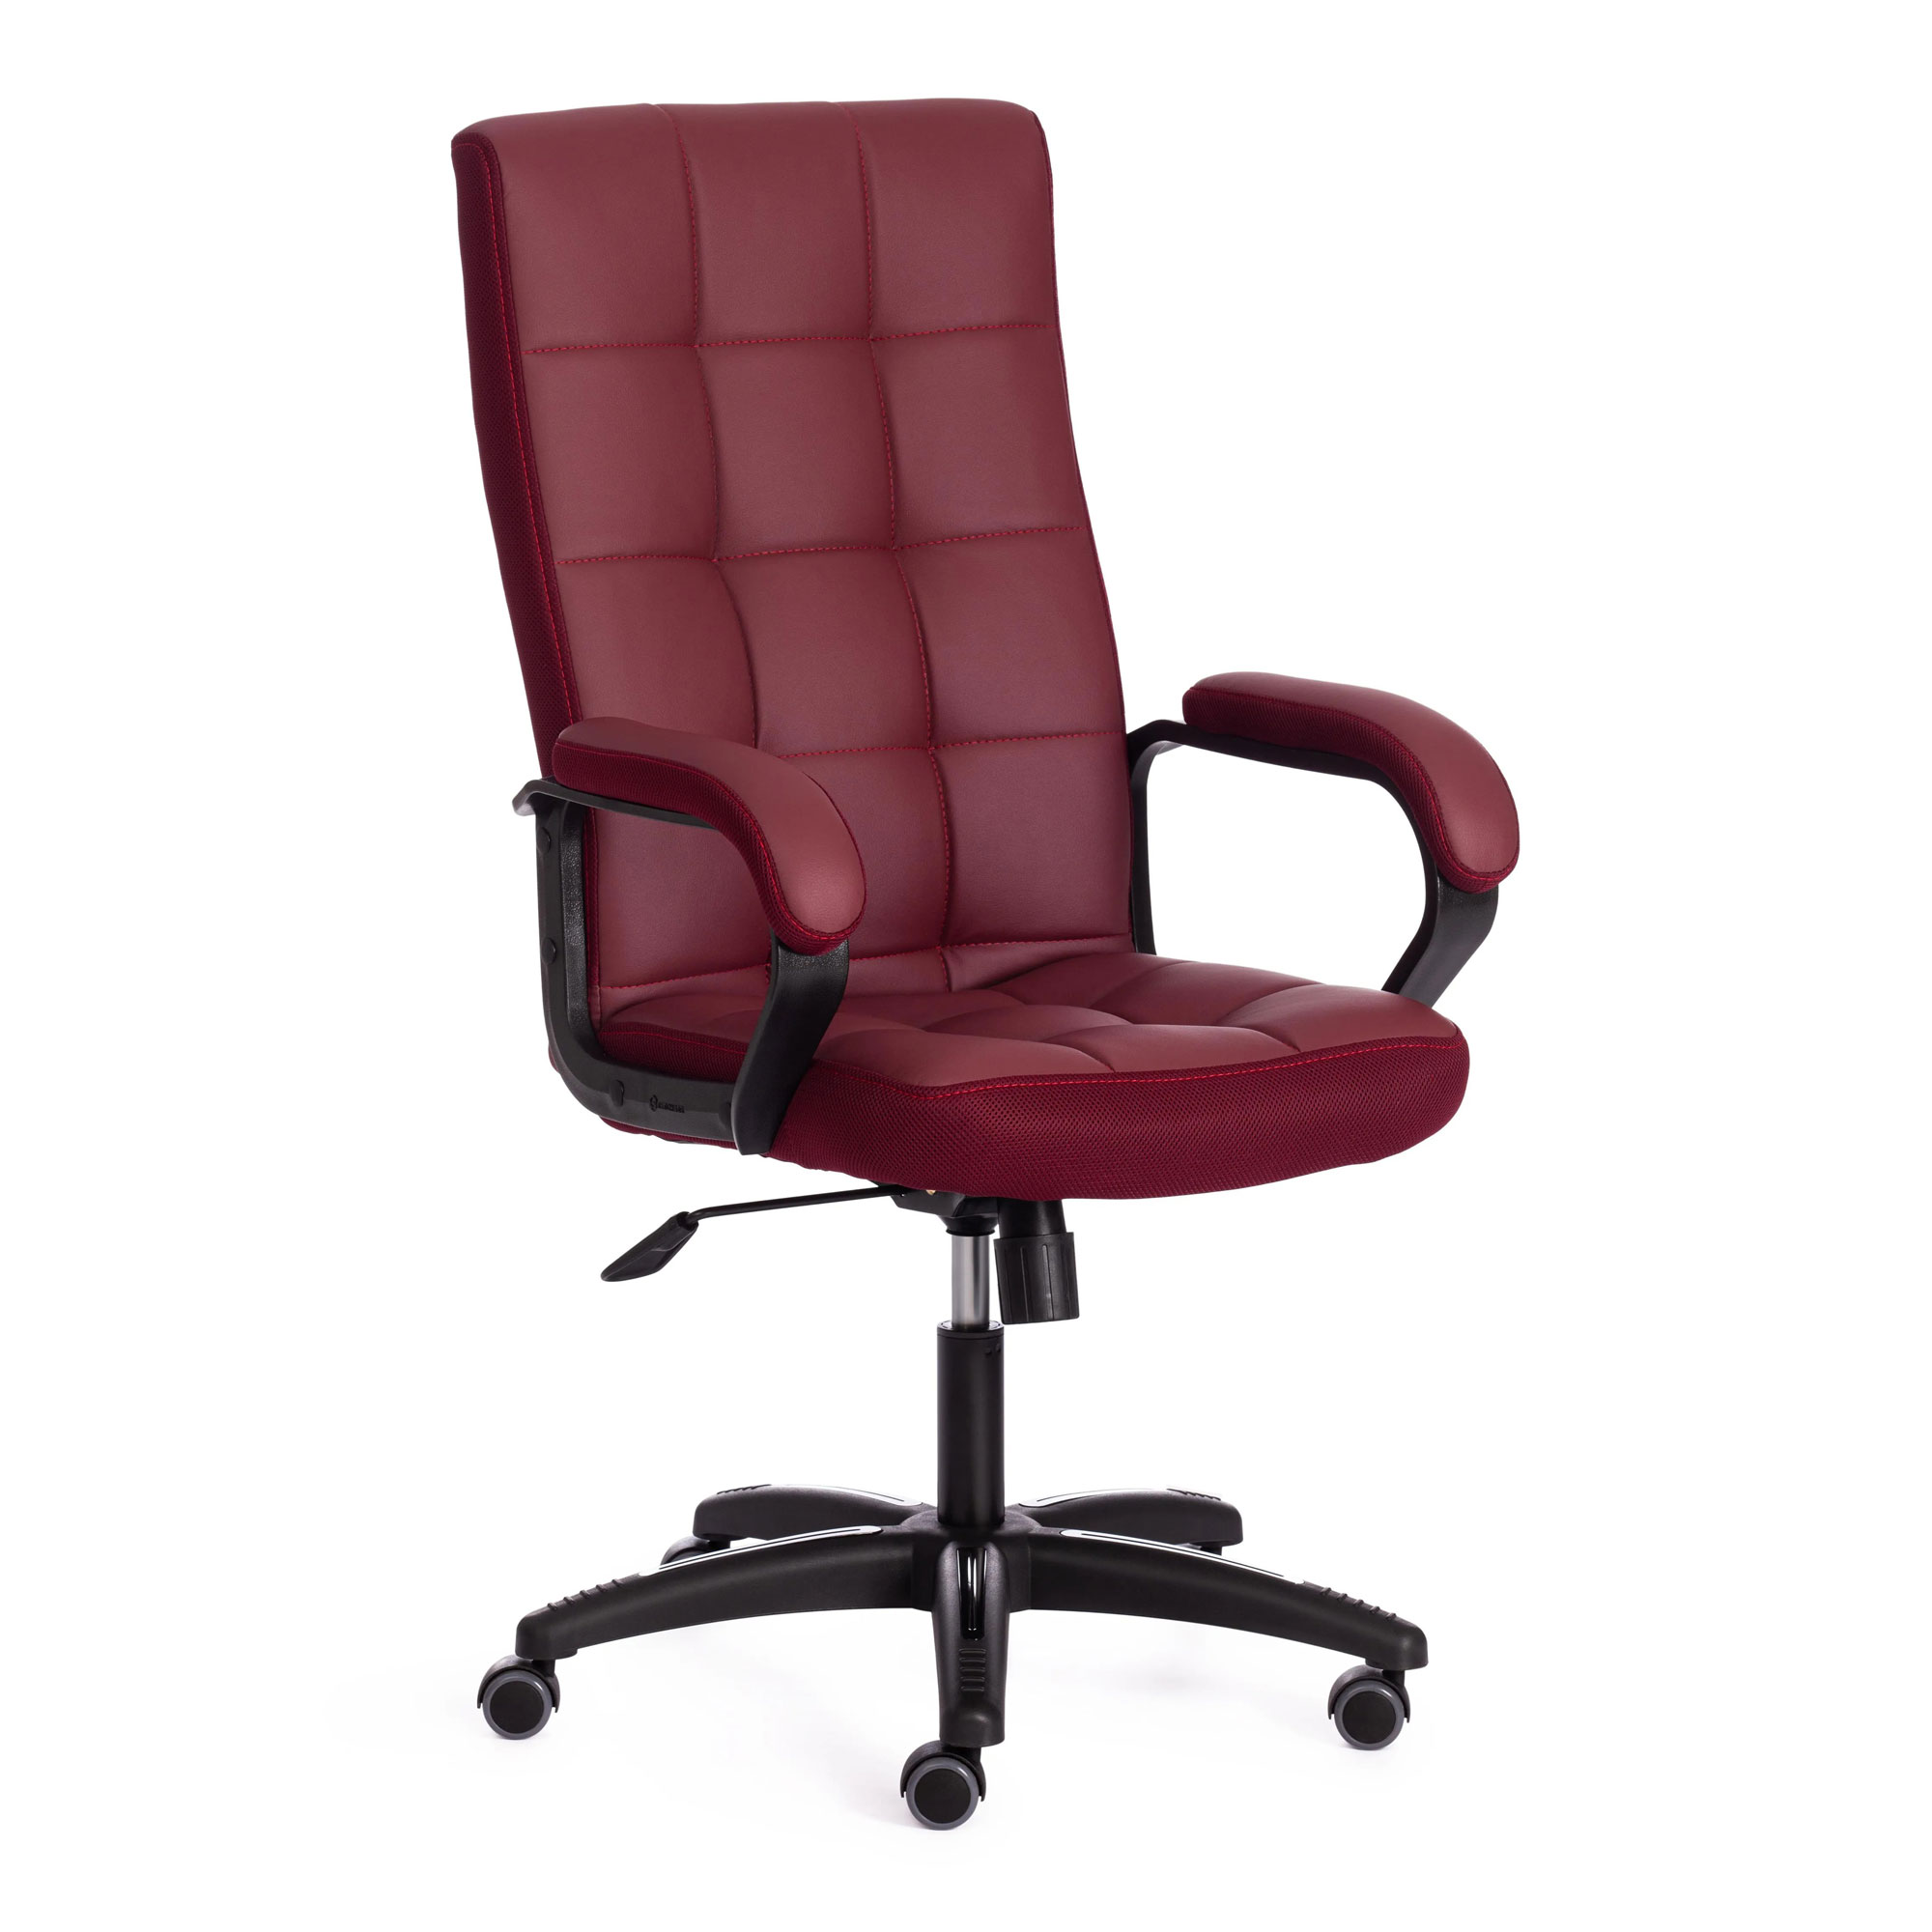 Кресло компьютерное TC искусственная кожа бордовое 61х47х126 см кресло компьютерное tc driver искусственная кожа чёрное с красным 55х49х126 см